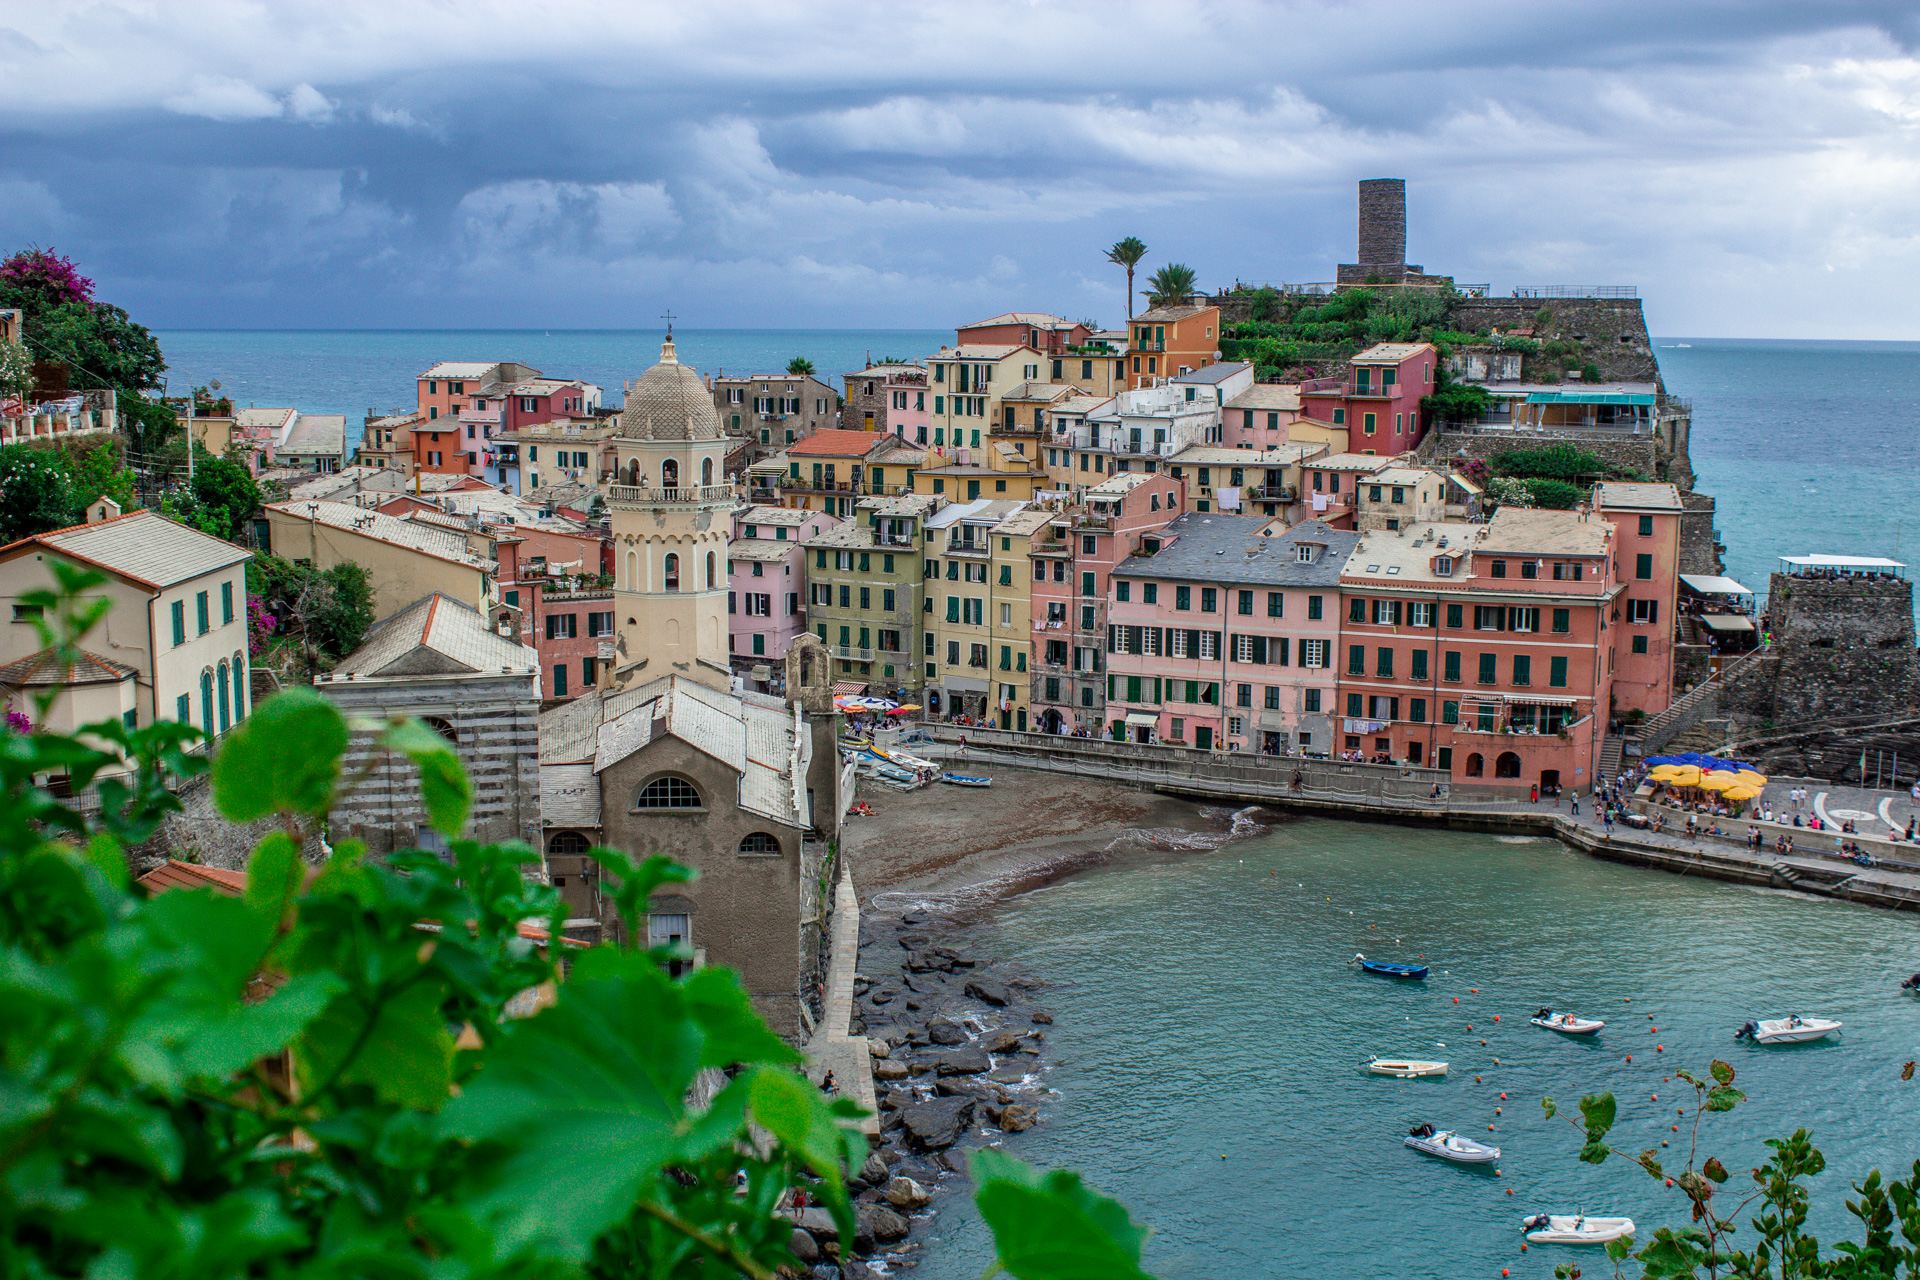 Vernazza - Cinque Terre.
Im malerischen Hafen gehen die Einheimischen und Touristen gerne baden.